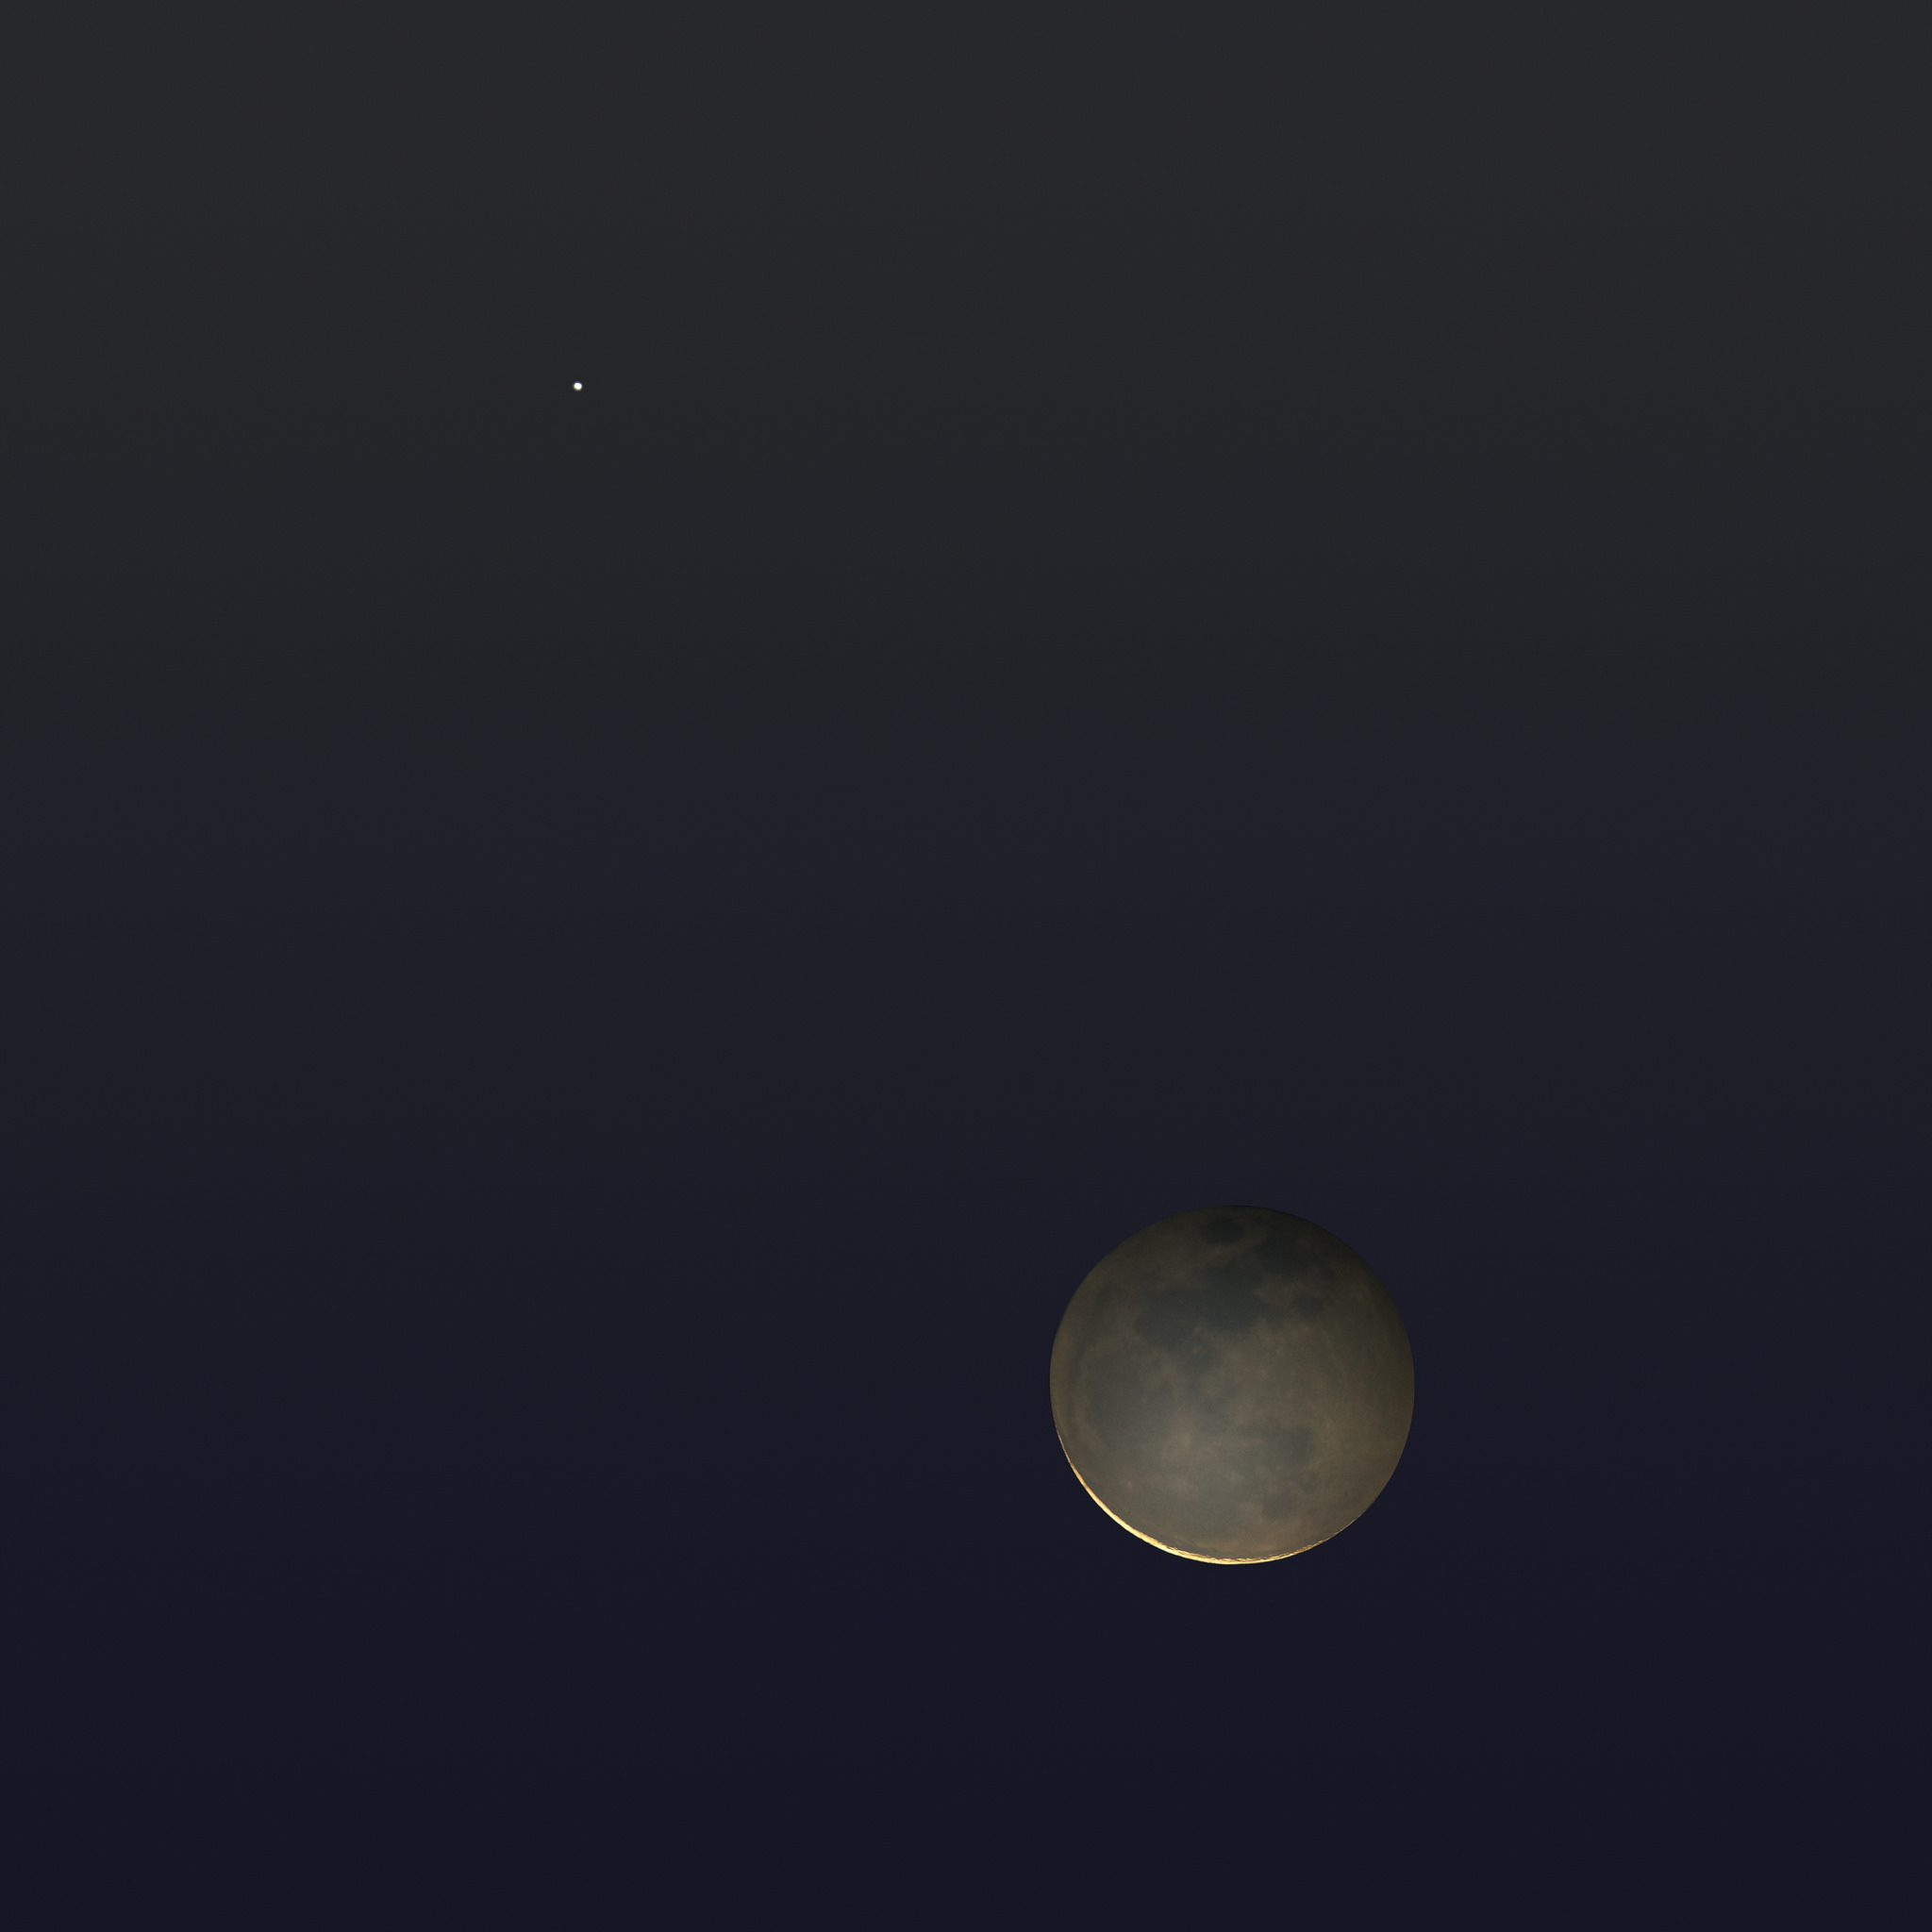 Mercury & the Moon with Earthshine